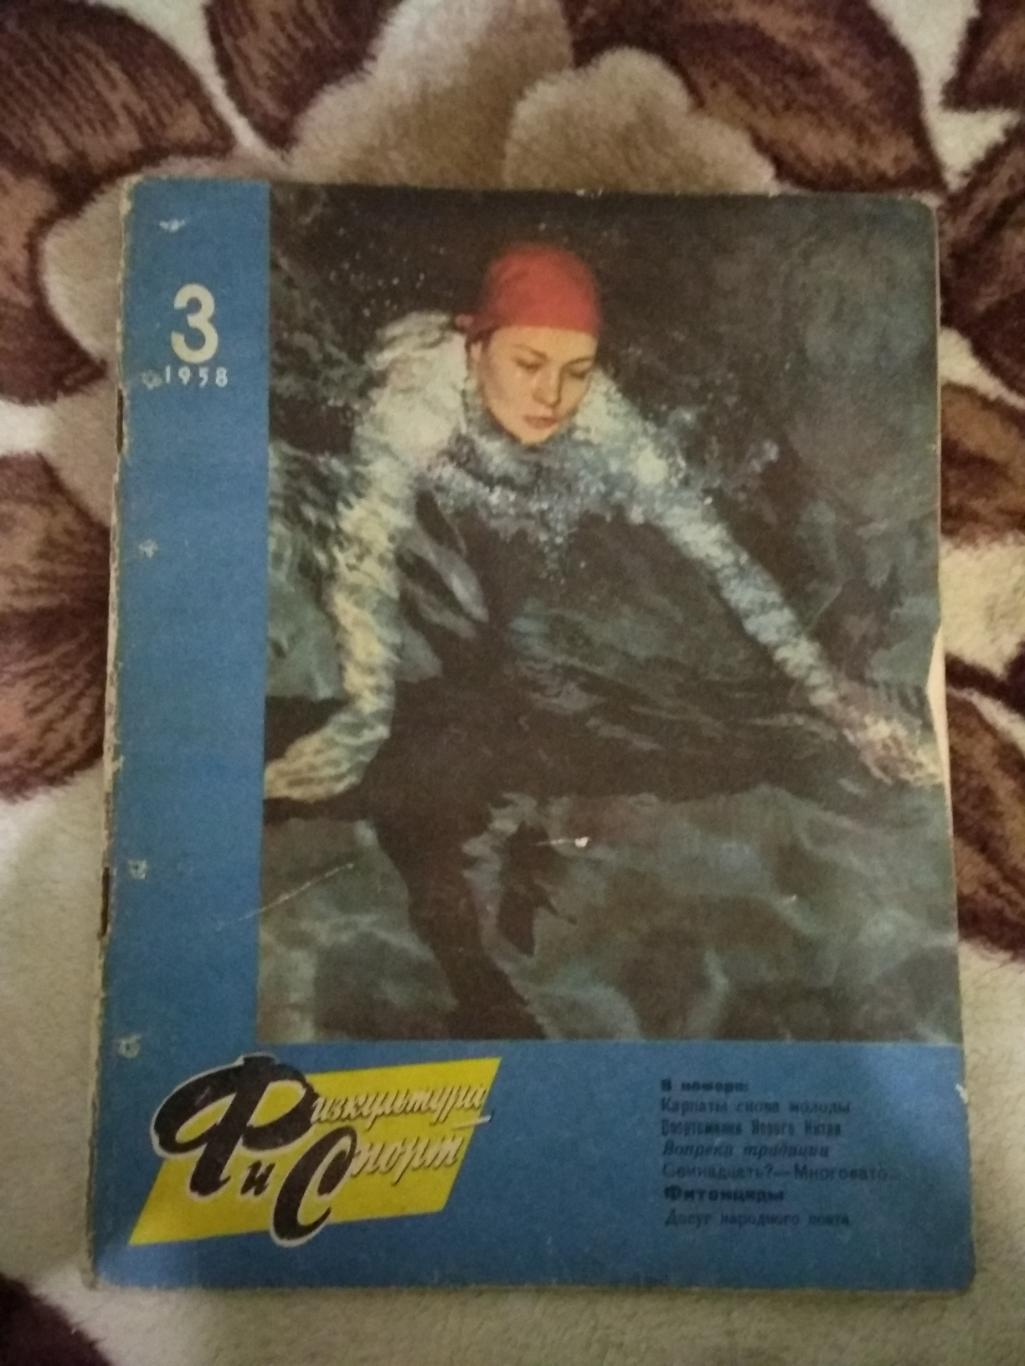 Журнал.Физкультура и спорт № 3 1958 г. (ФиС).